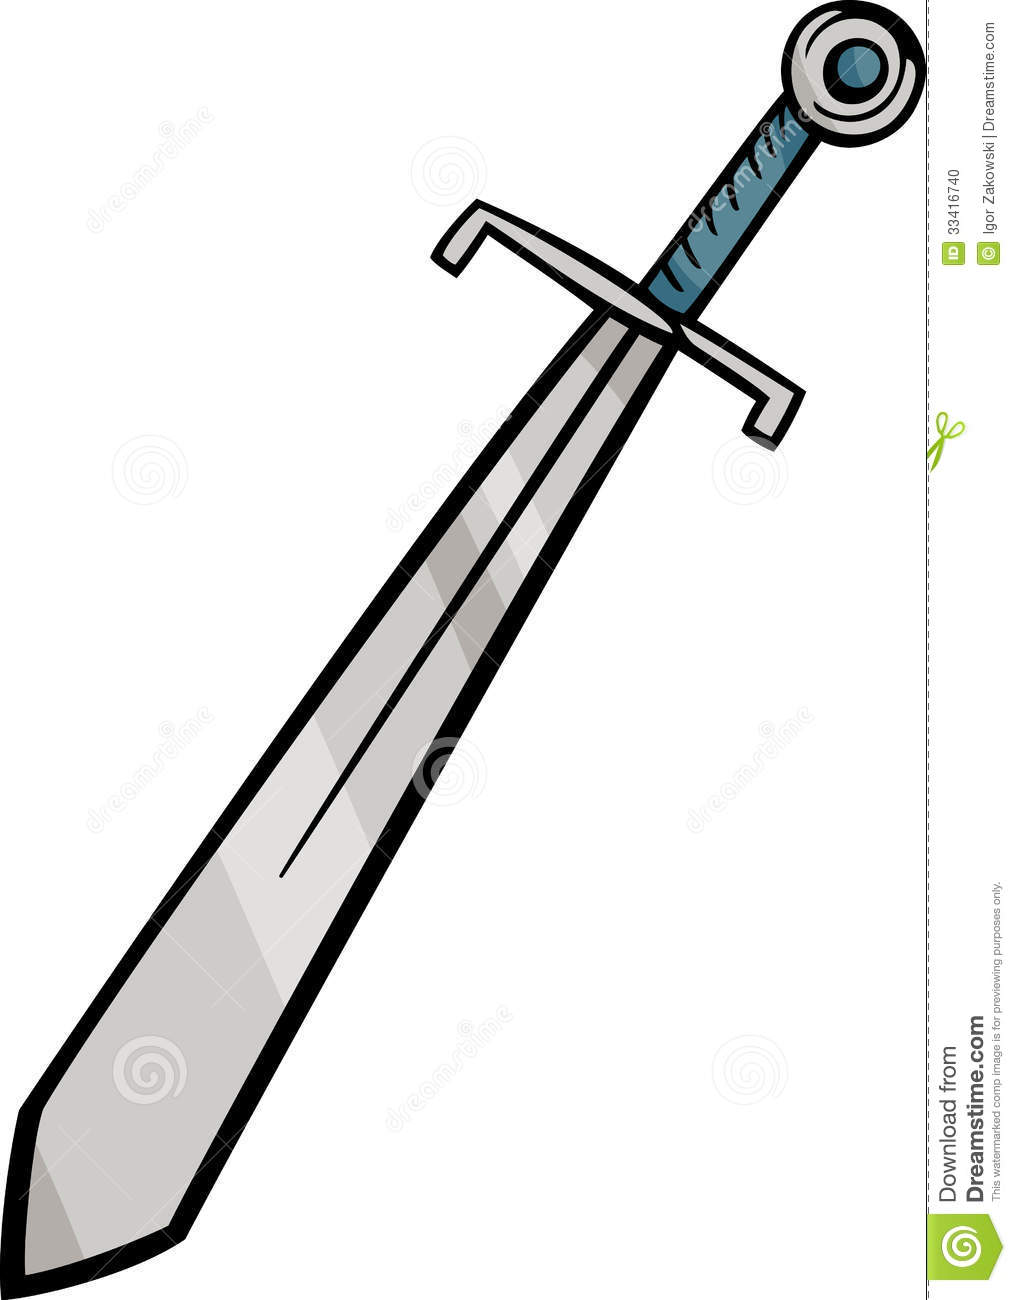 knight clipart u0026middot; w - Clip Art Sword